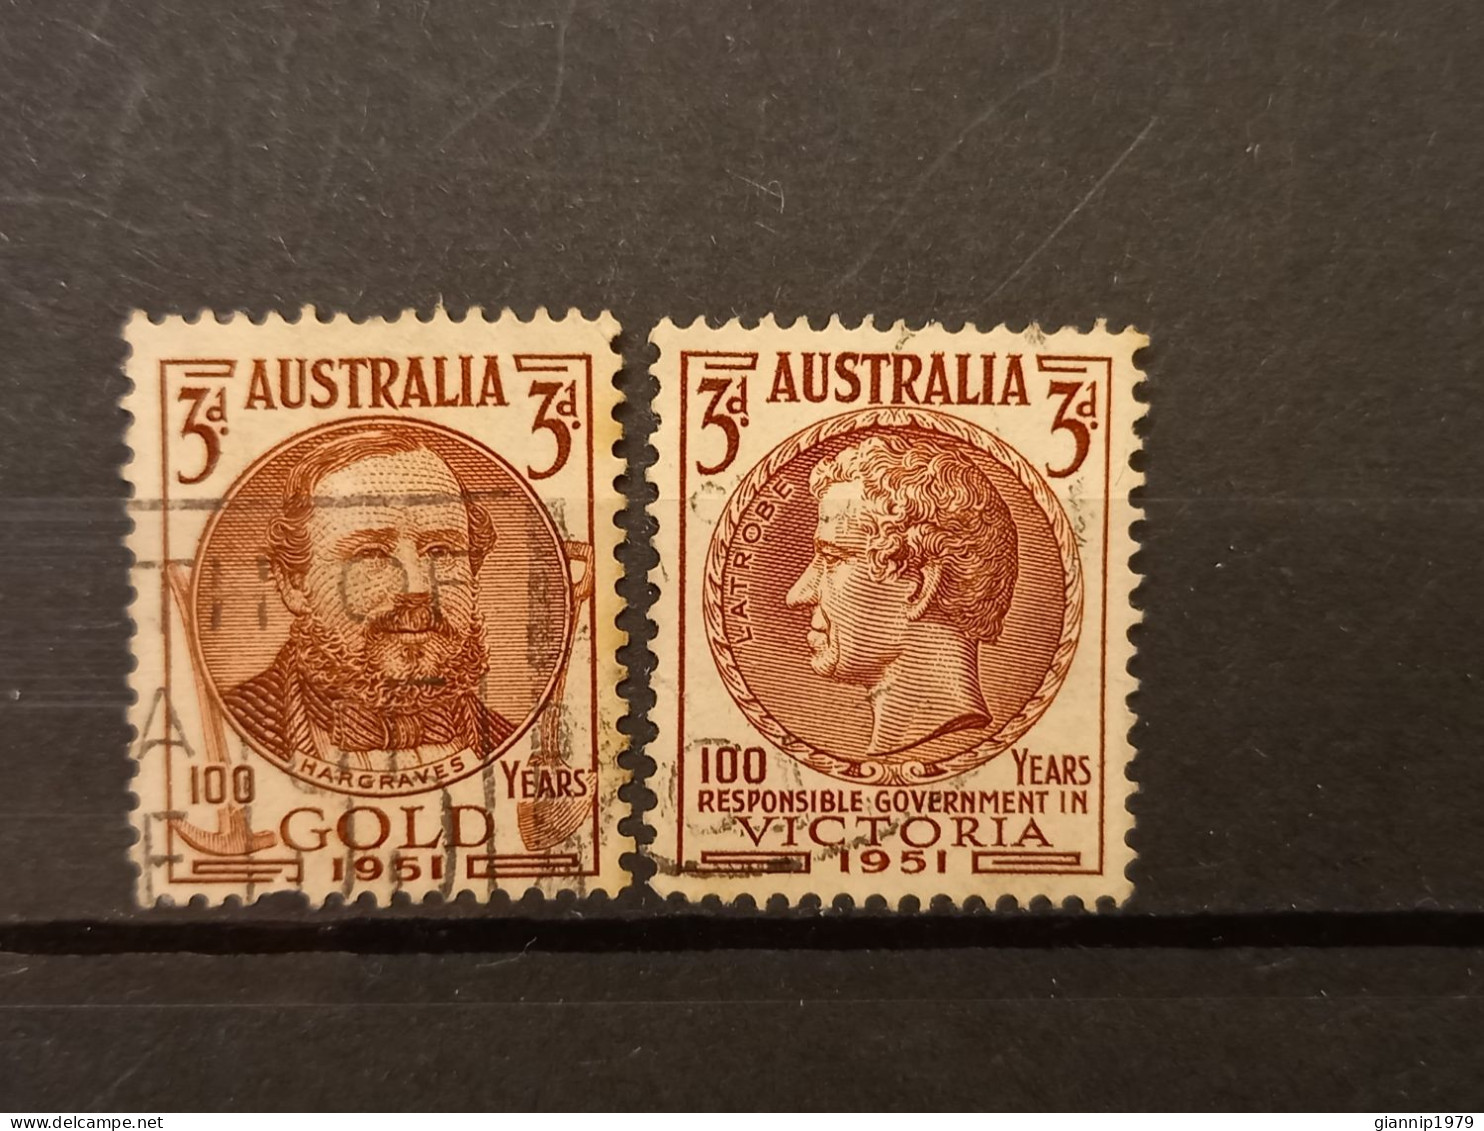 FRANCOBOLLI STAMPS AUSTRALIA AUSTRALIAN 1951 USED SERIE COMPLETE COMPLETA 100 ANNI ANNIVERSARY ORO VICTORIA OBLITERE' - Oblitérés